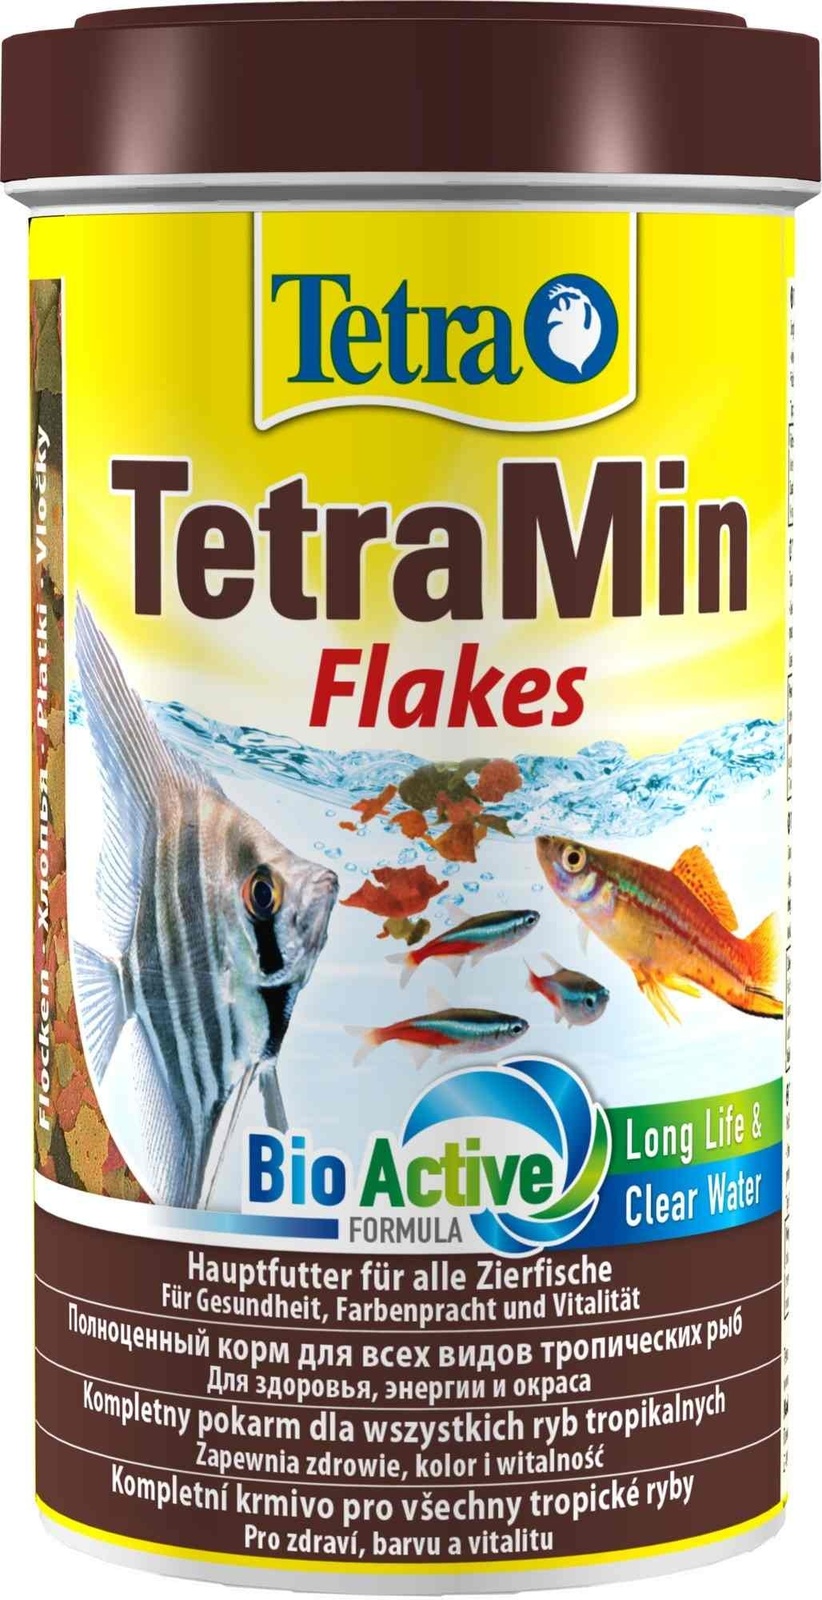 Tetra (корма) корм для всех видов тропических рыб. хлопья TetraMin Flakes (100 г)